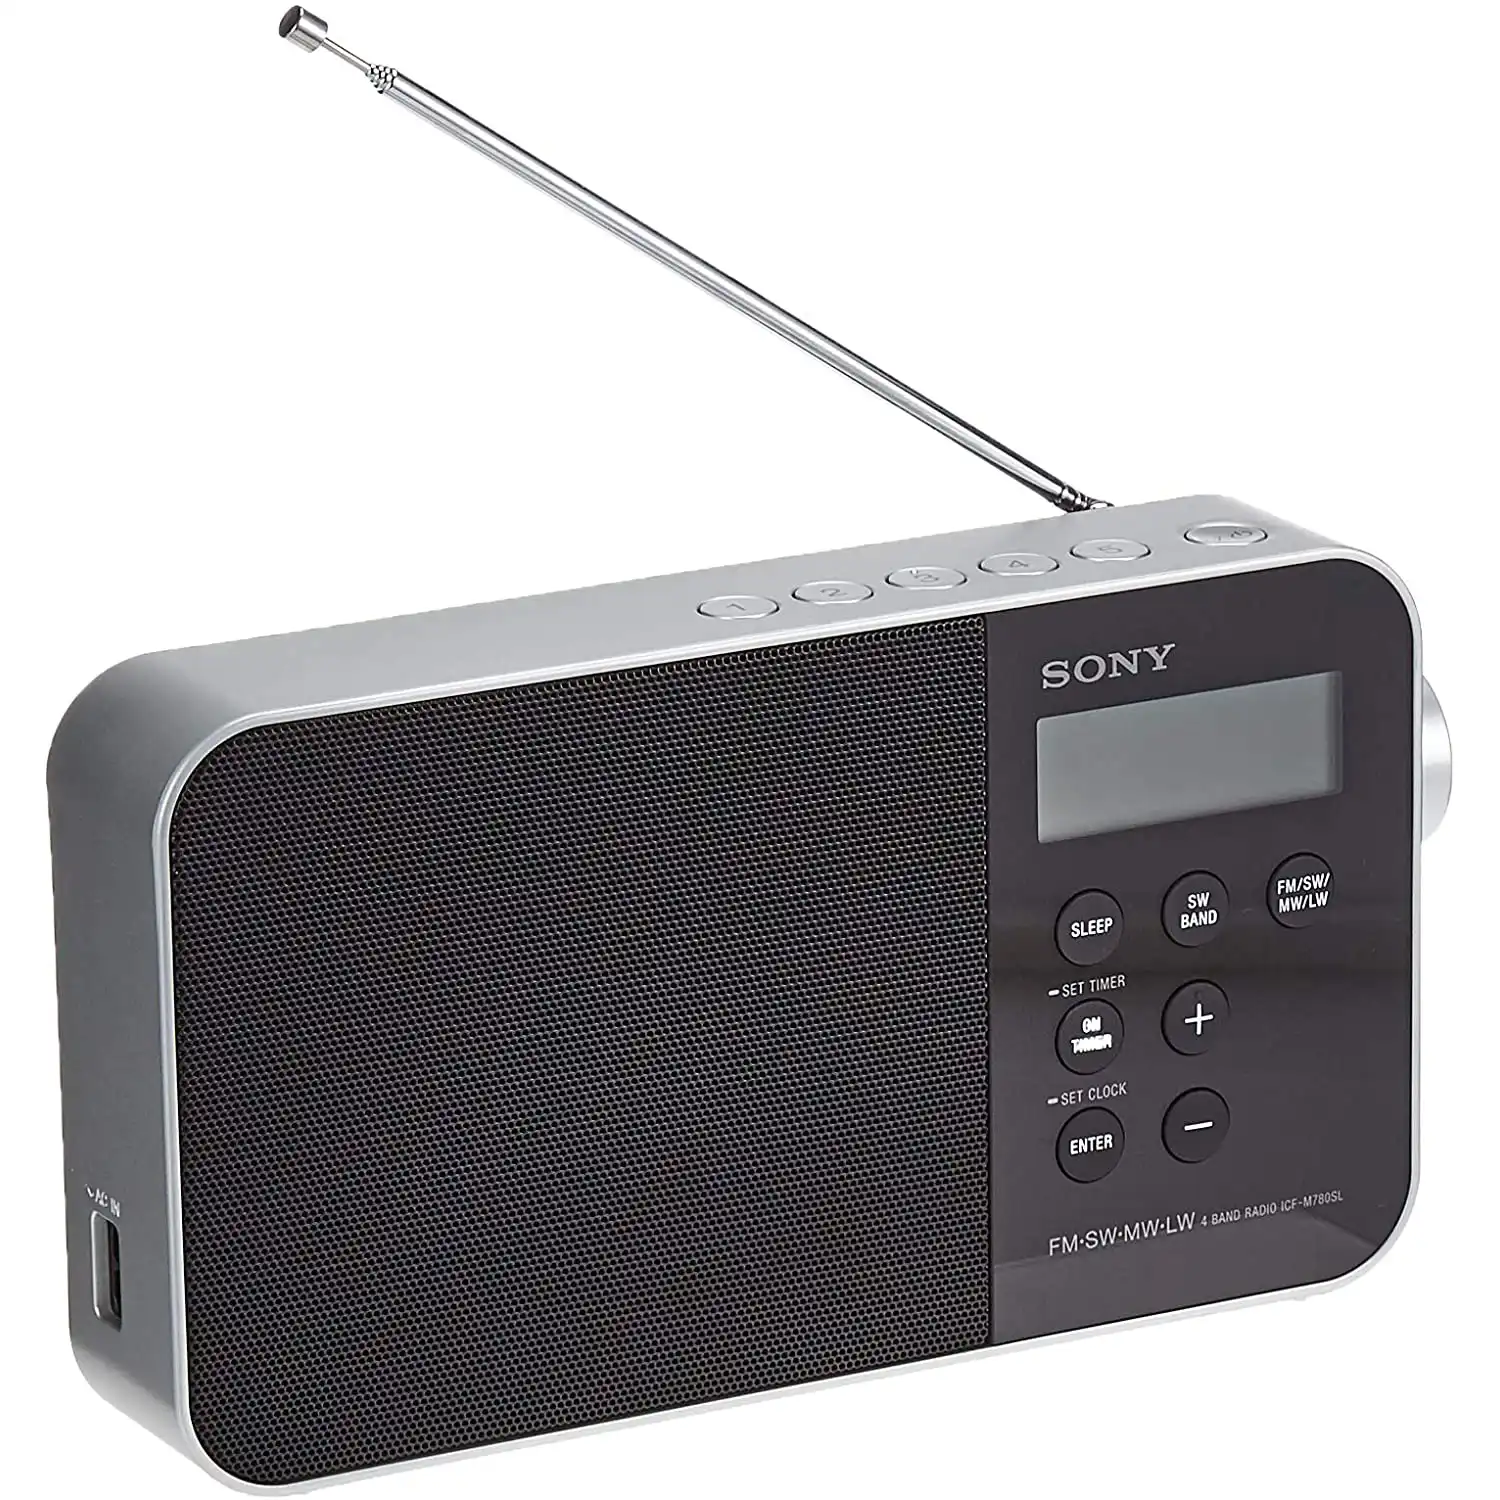  رادیو سونی مدل ICF-M780SL